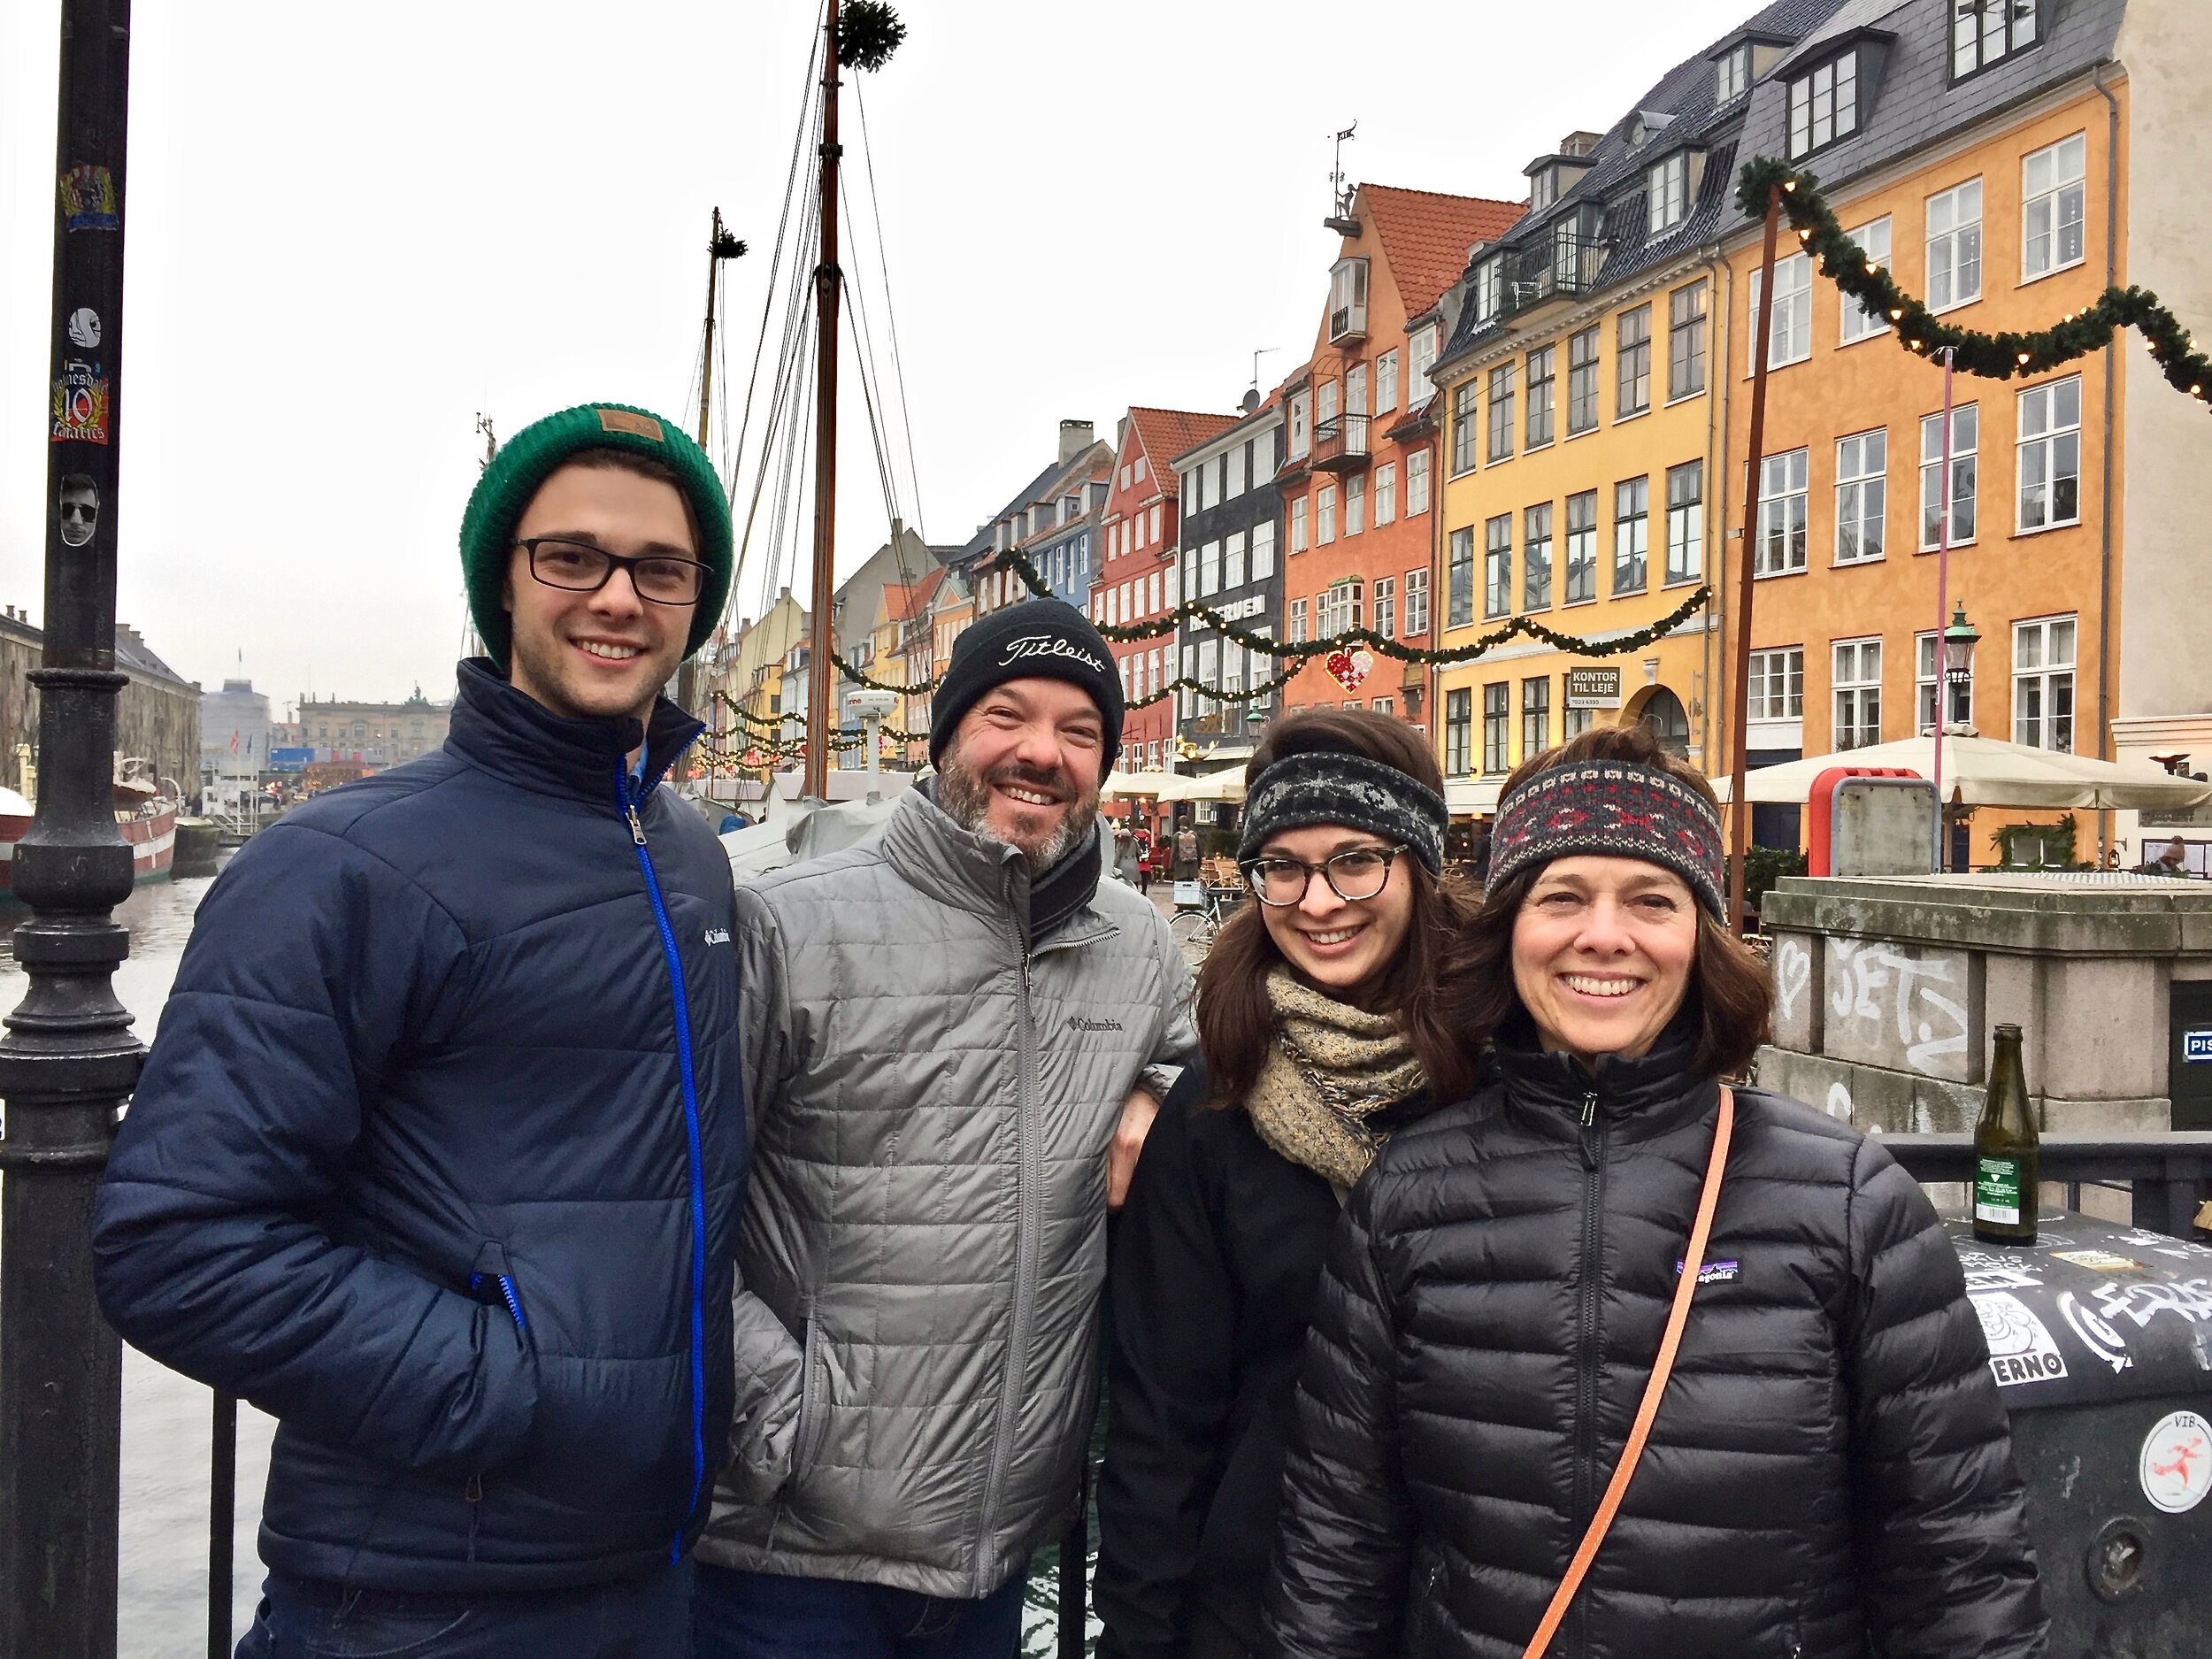 Our family at Nyhavn in Copenhagen